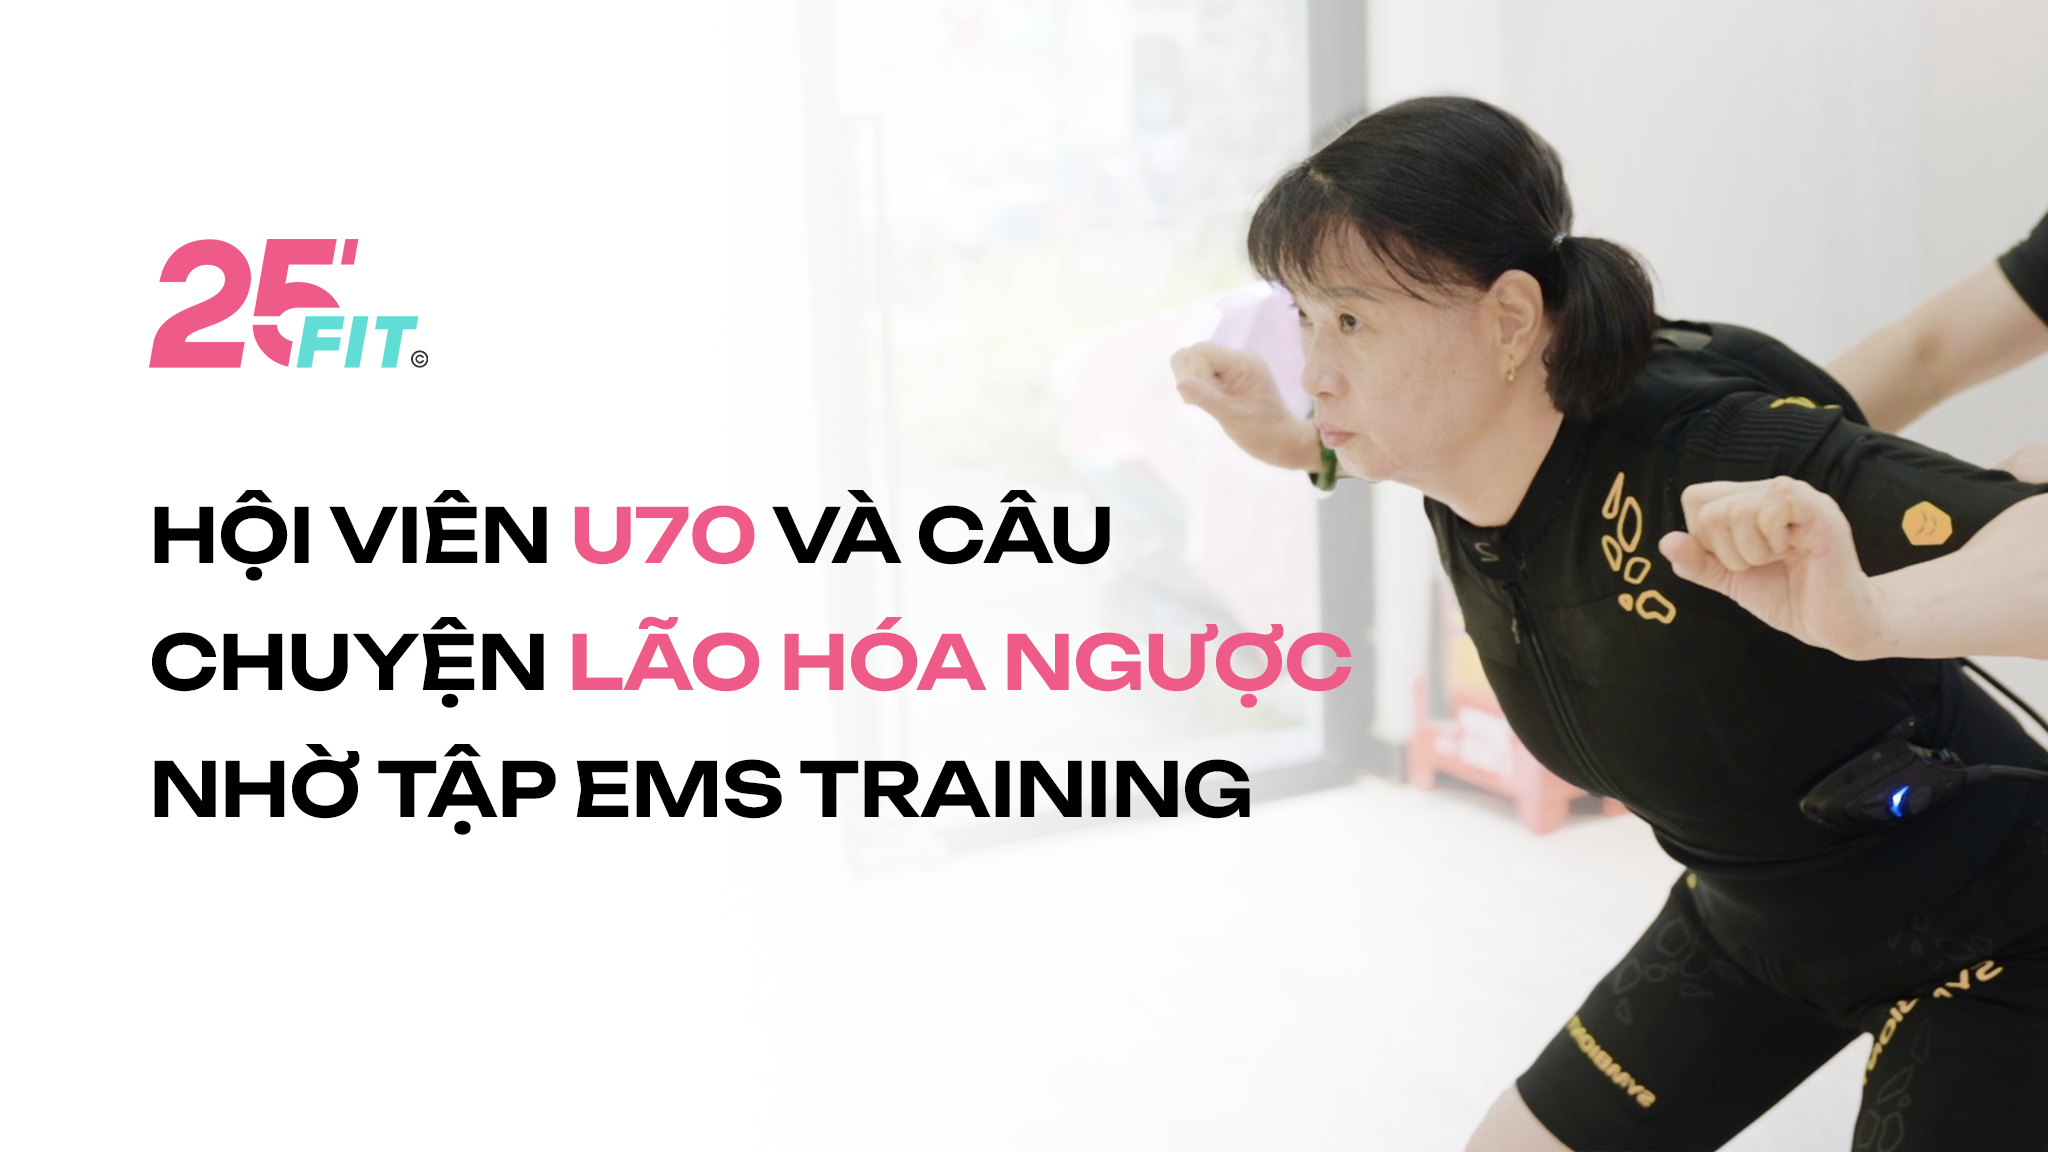 Hội viên U70 và câu chuyện lão hóa ngược nhờ tập EMS Training